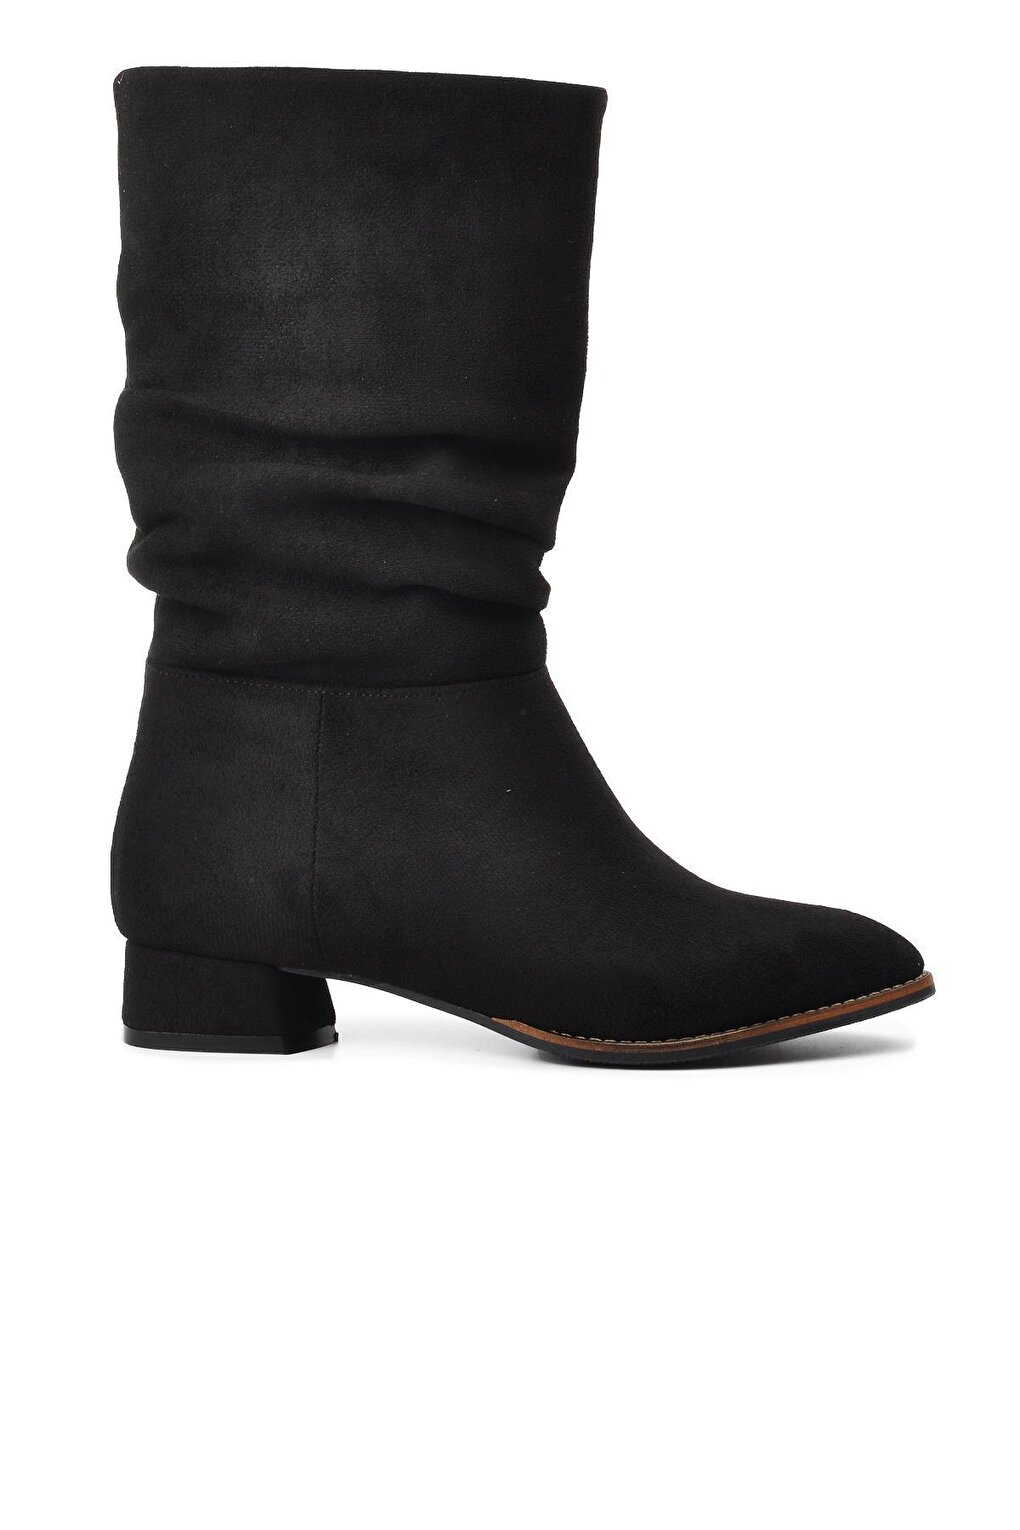 K04 Черные замшевые женские ботинки Ayakmod